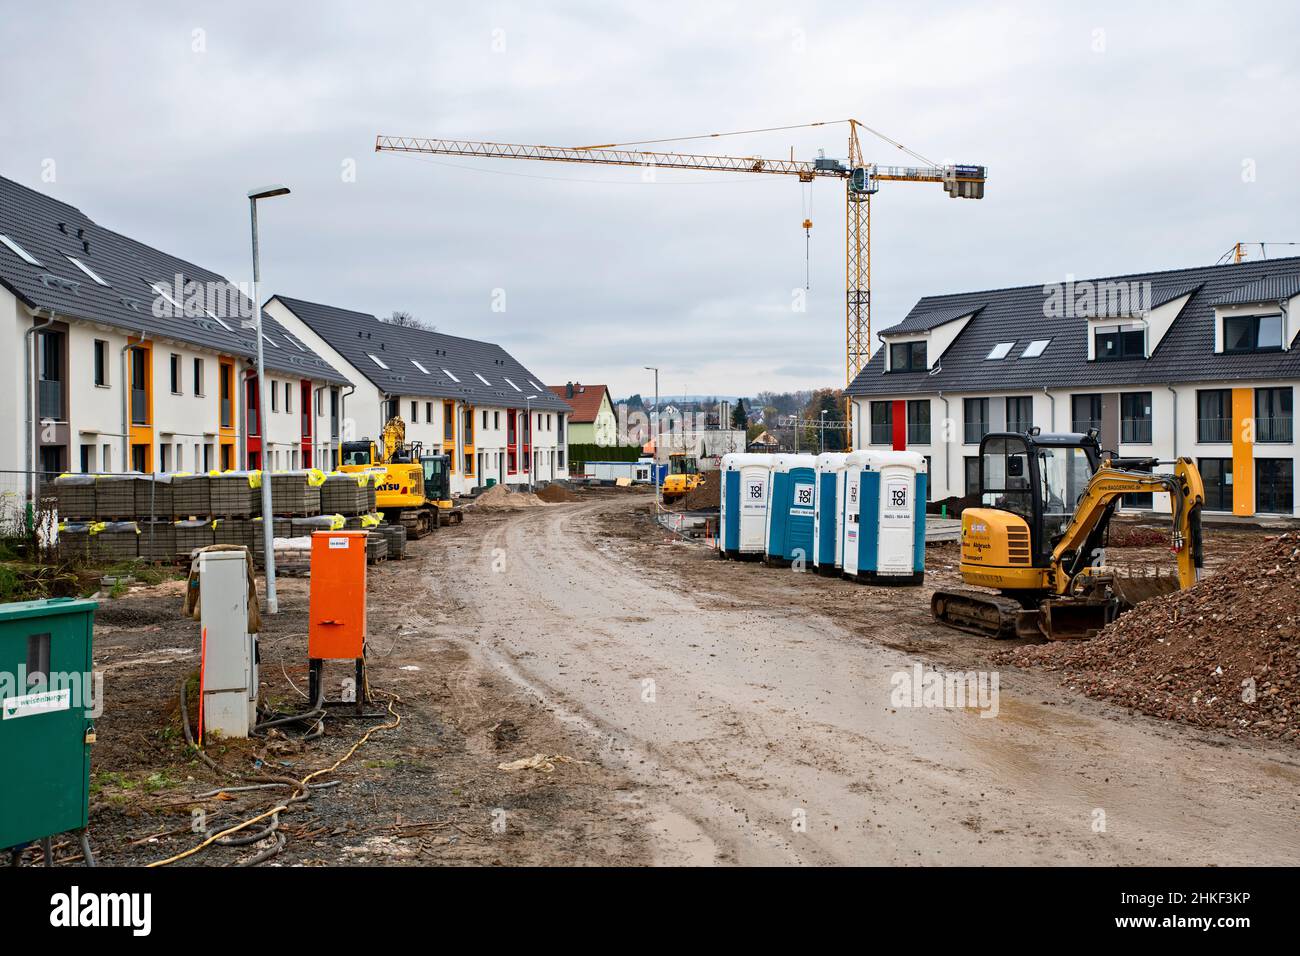 Nuova area di sviluppo con case a schiera nel quartiere Ober-Erlenbach di Bad Homburg Foto Stock